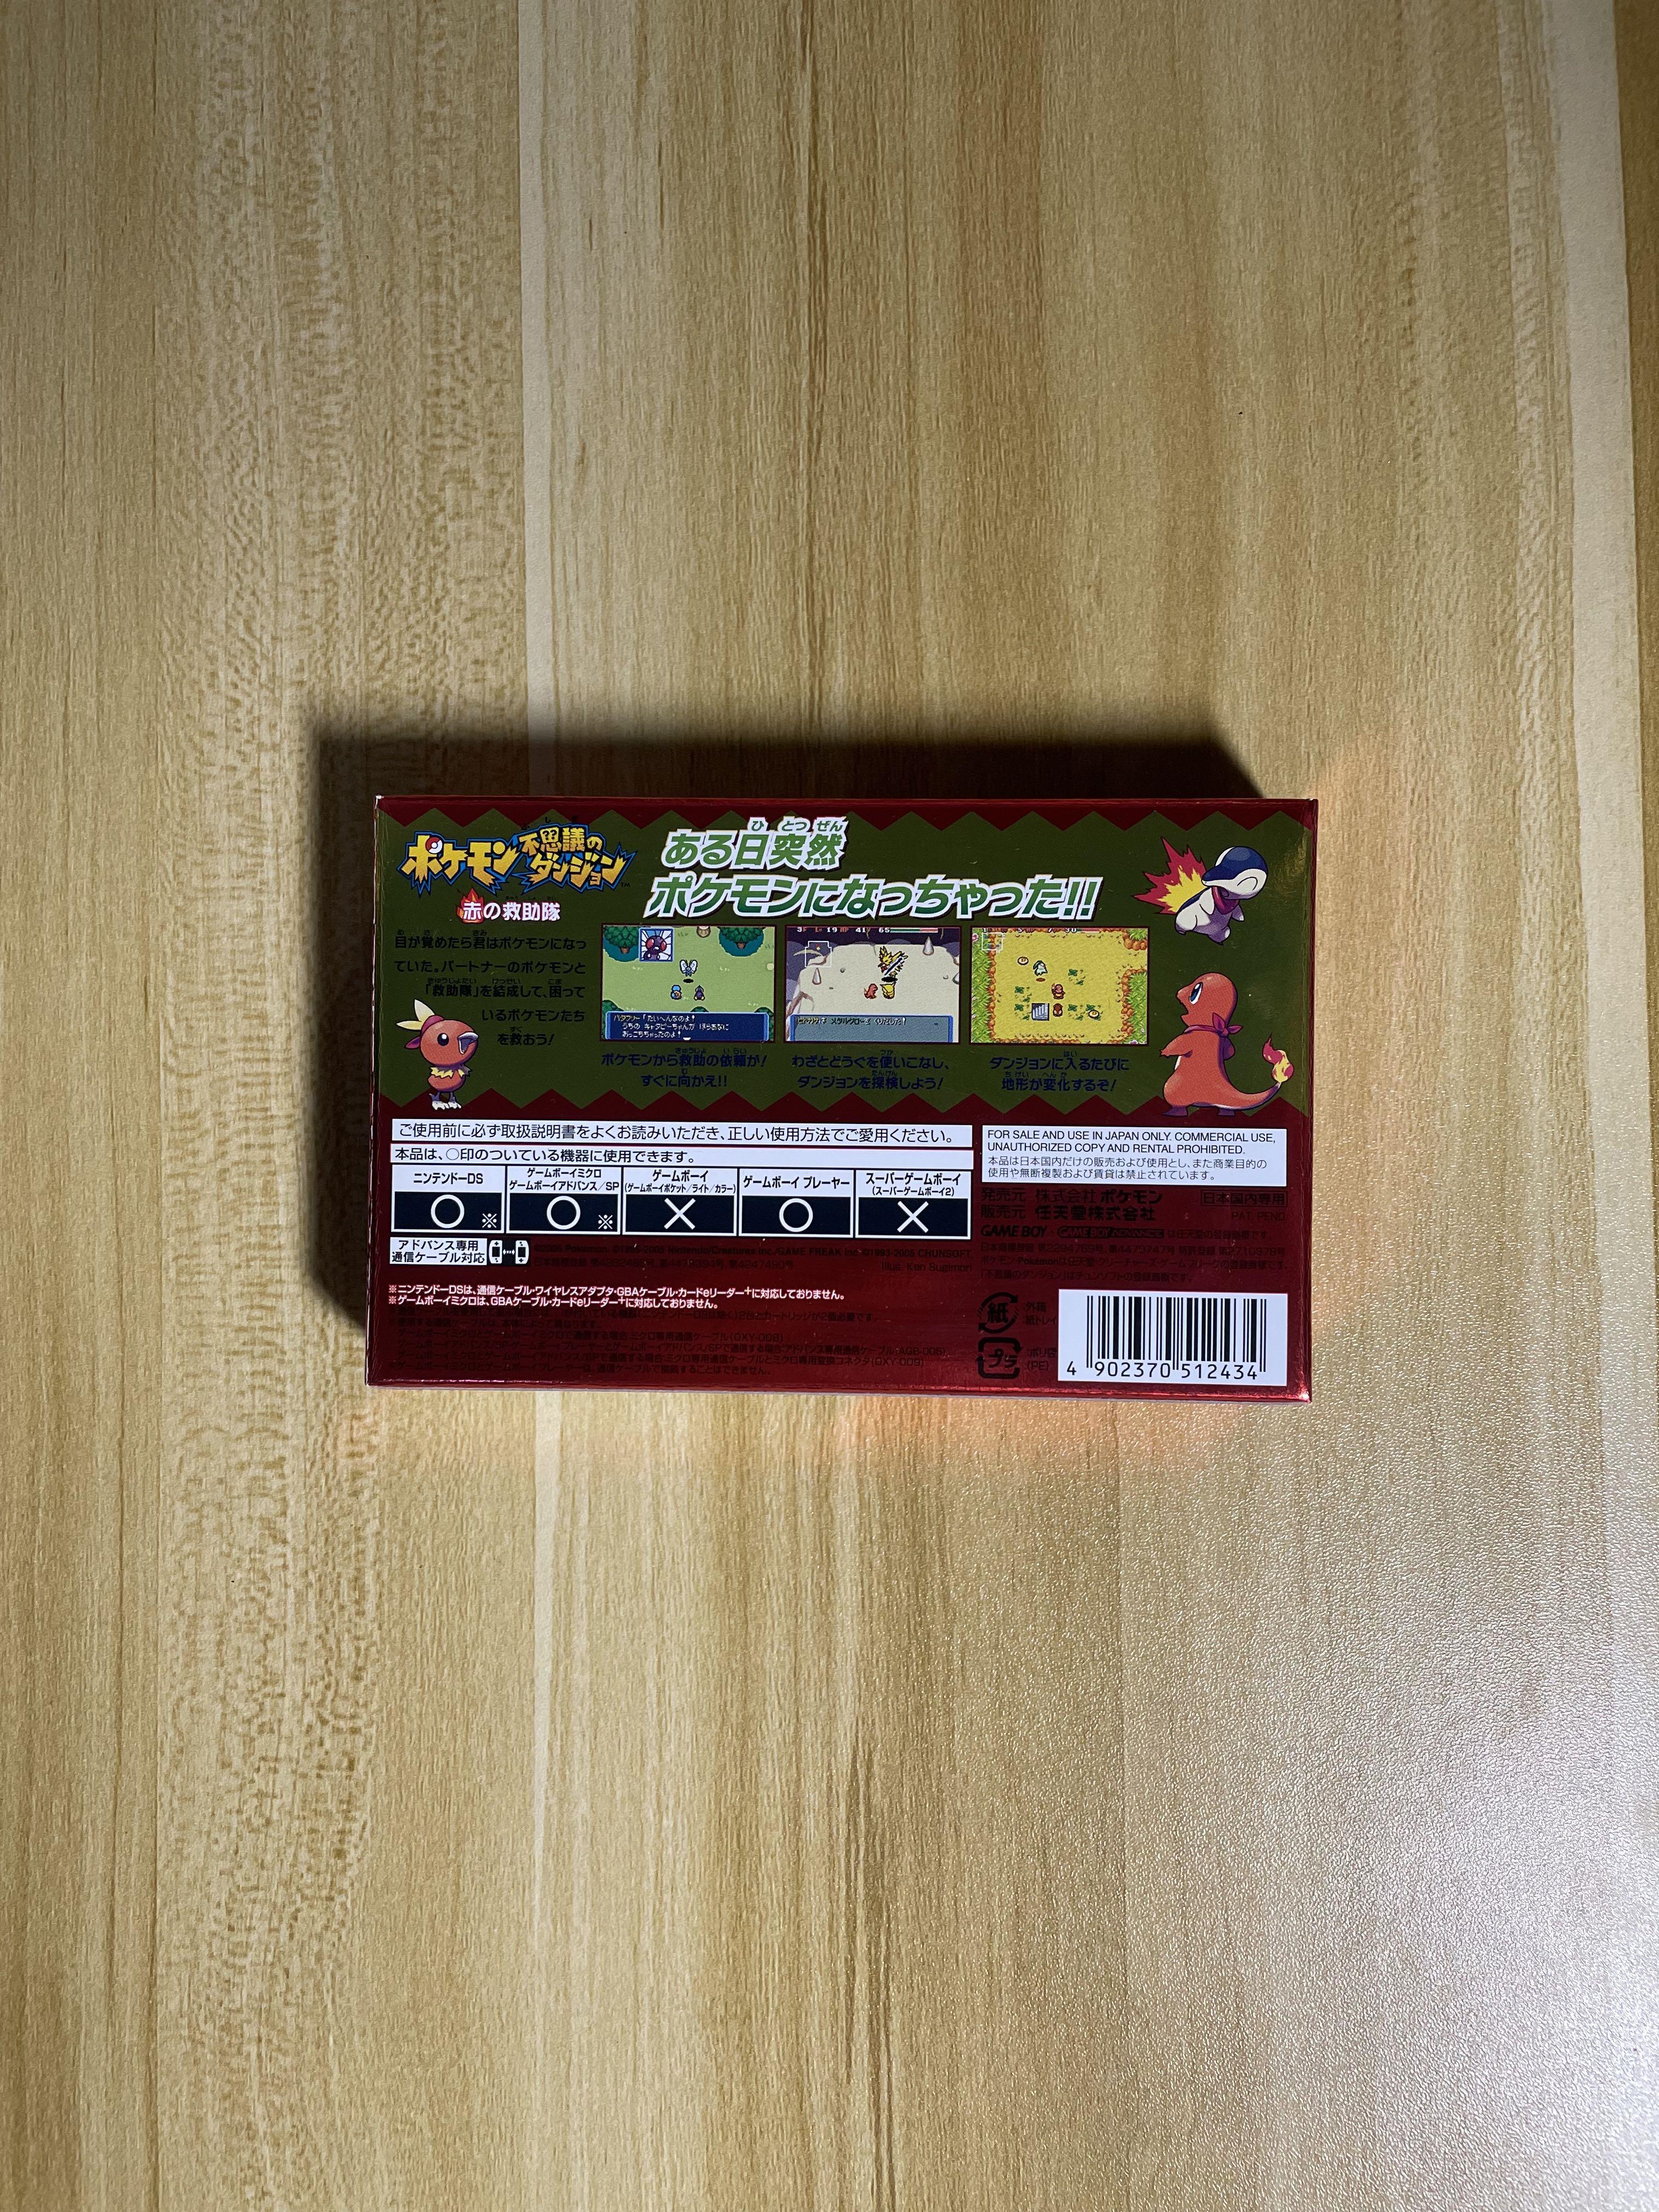 全新絕版gba Gameboy Advance 寵物小精靈寶可夢口袋妖怪不可思議迷宮赤之救助隊ポケモン不思議のダンジョン赤の救助隊pokemon Mystery Dungeon Red Rescue Team